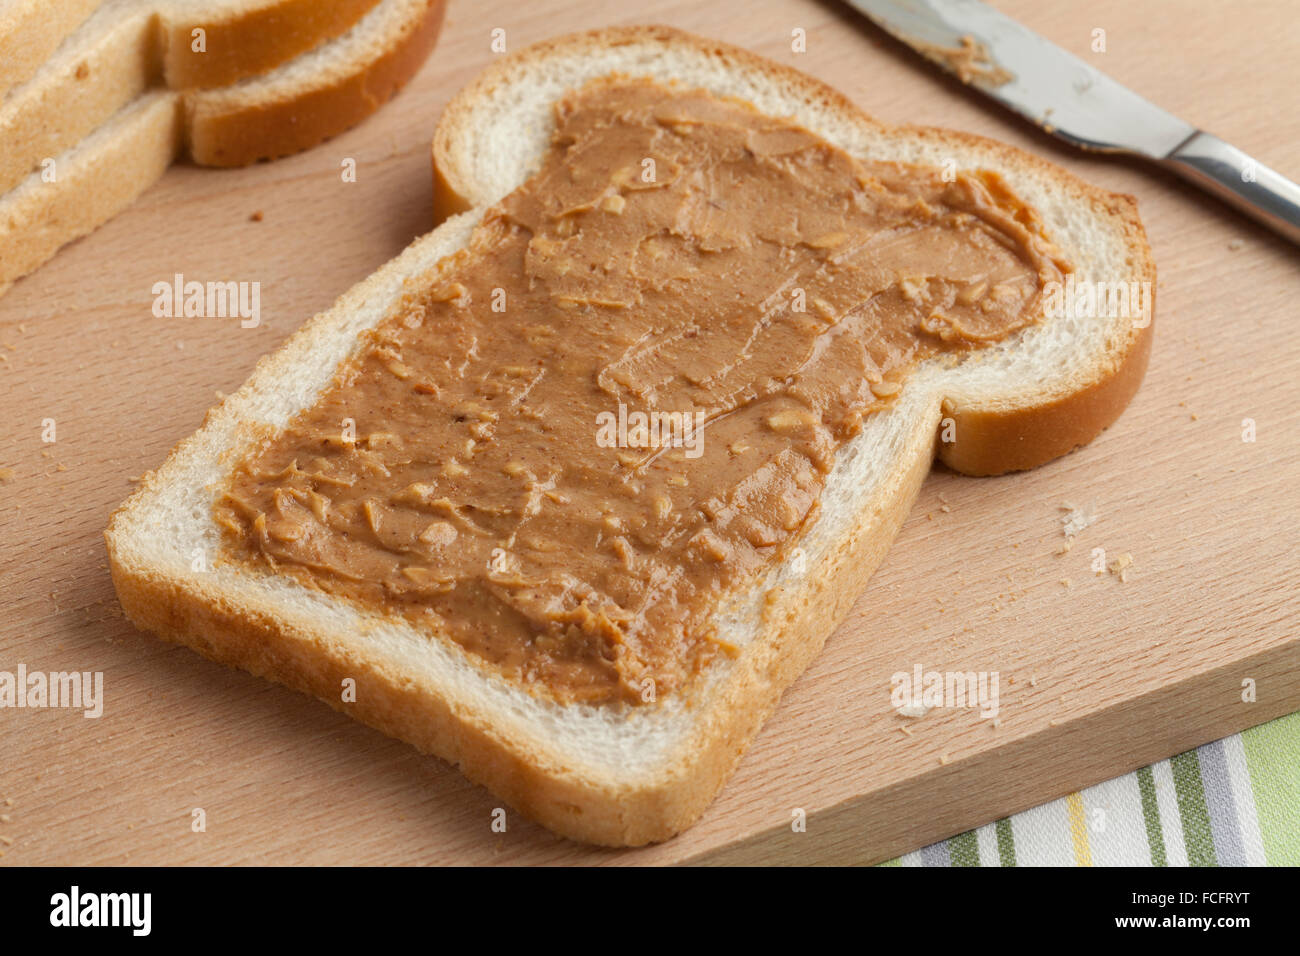 Tranche de pain blanc avec du beurre d'arachide sur une planche à découper en bois Banque D'Images